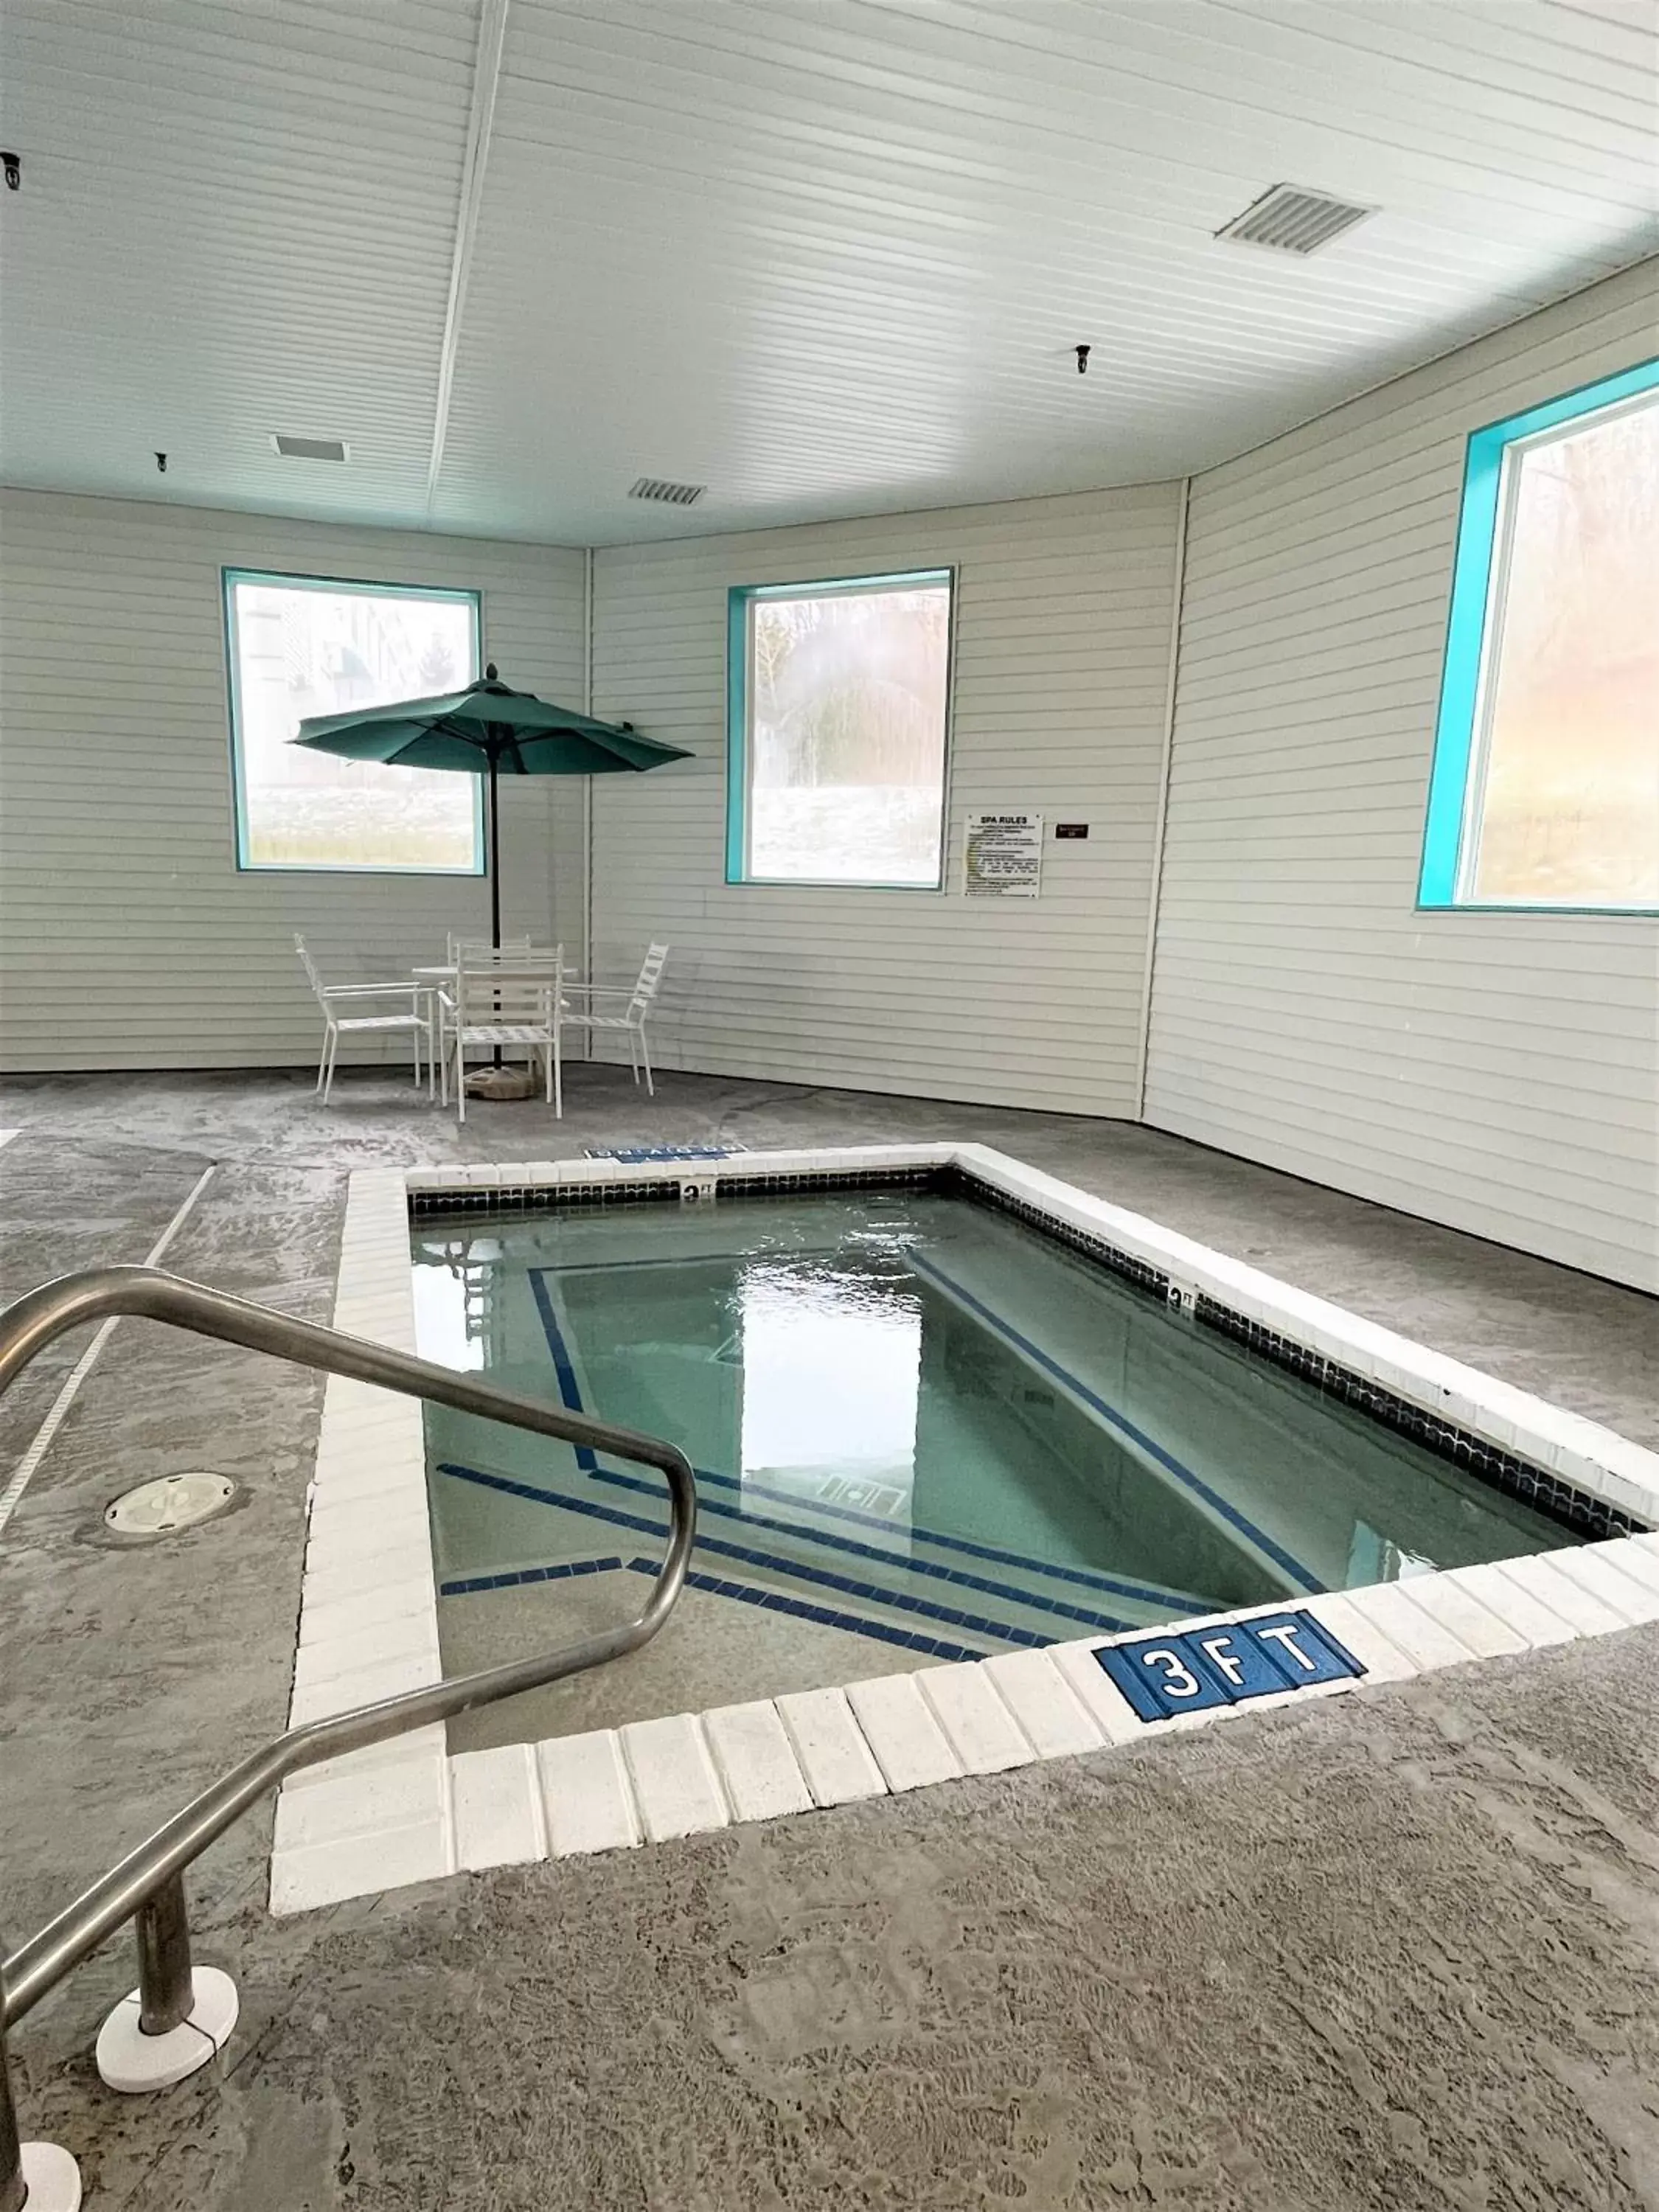 Hot Tub, Swimming Pool in AmericInn by Wyndham Petoskey